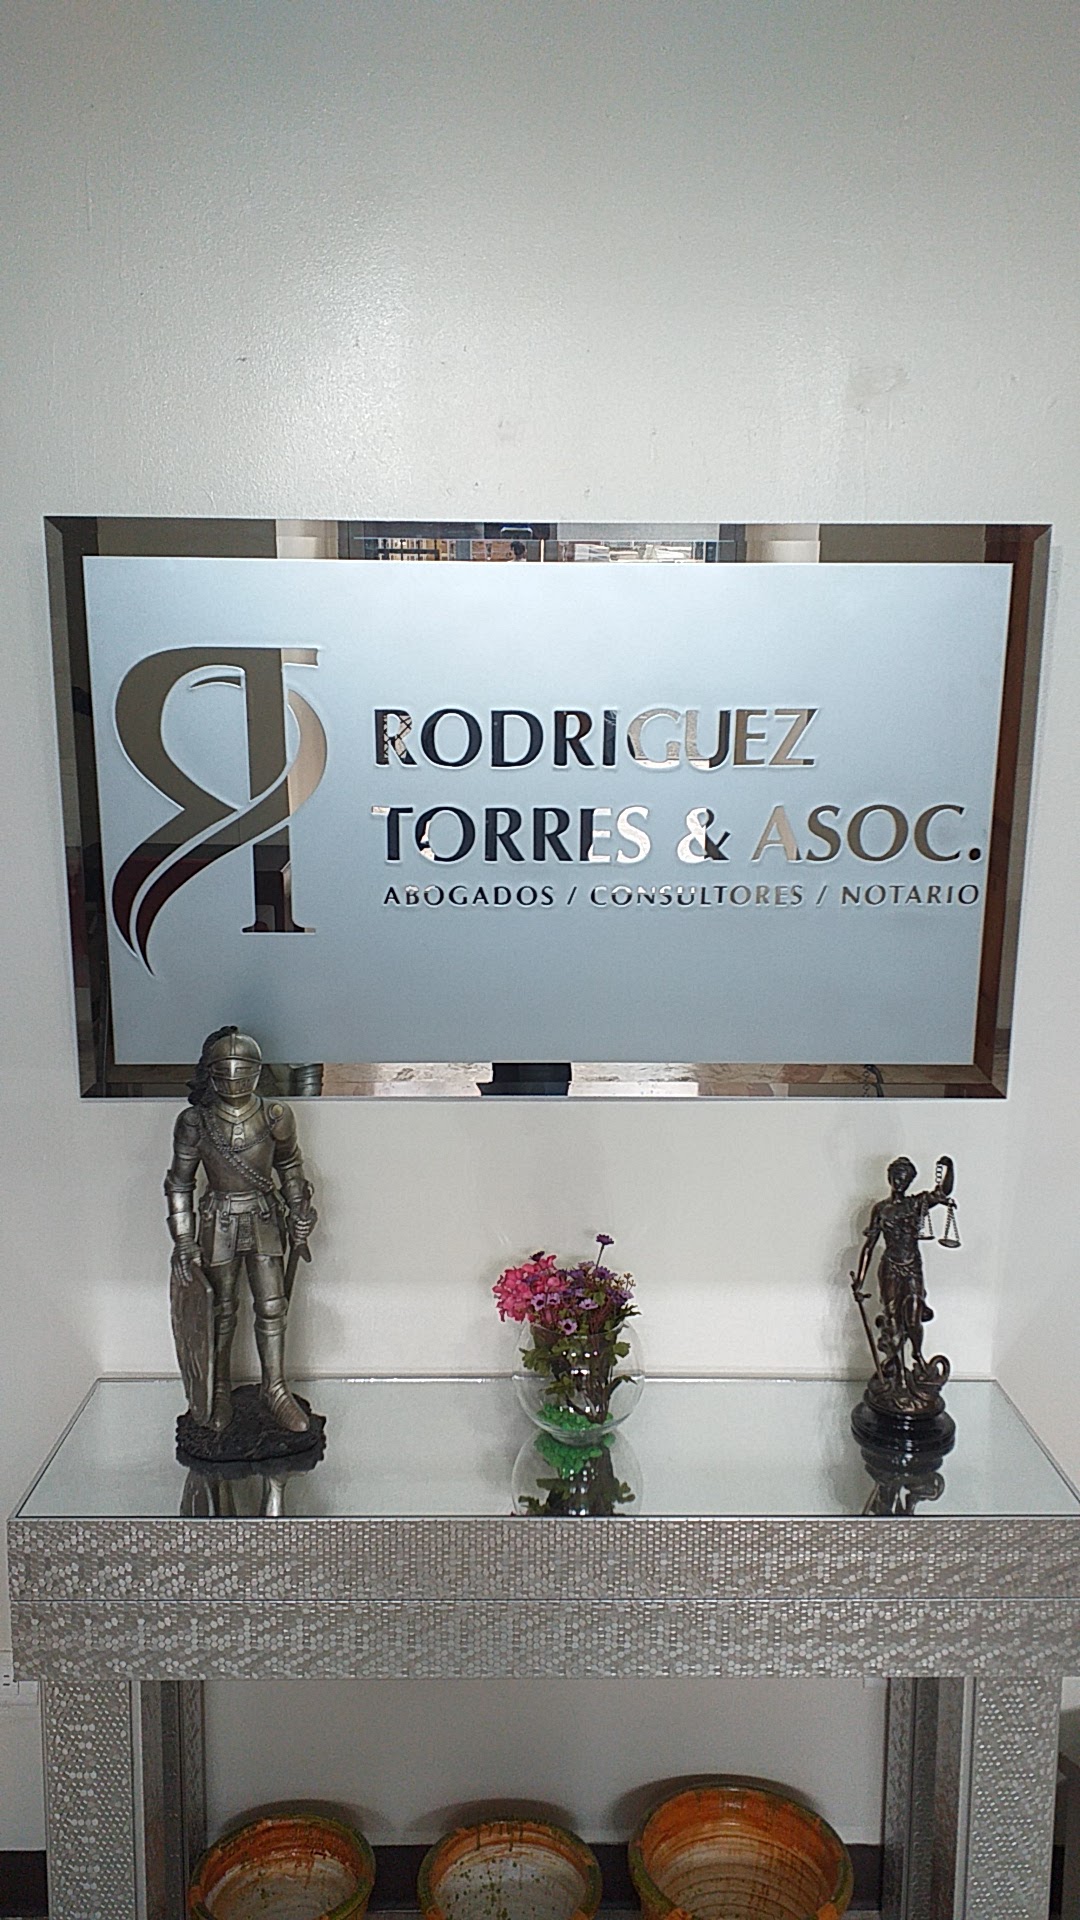 Rodriguez Torres & Asociados